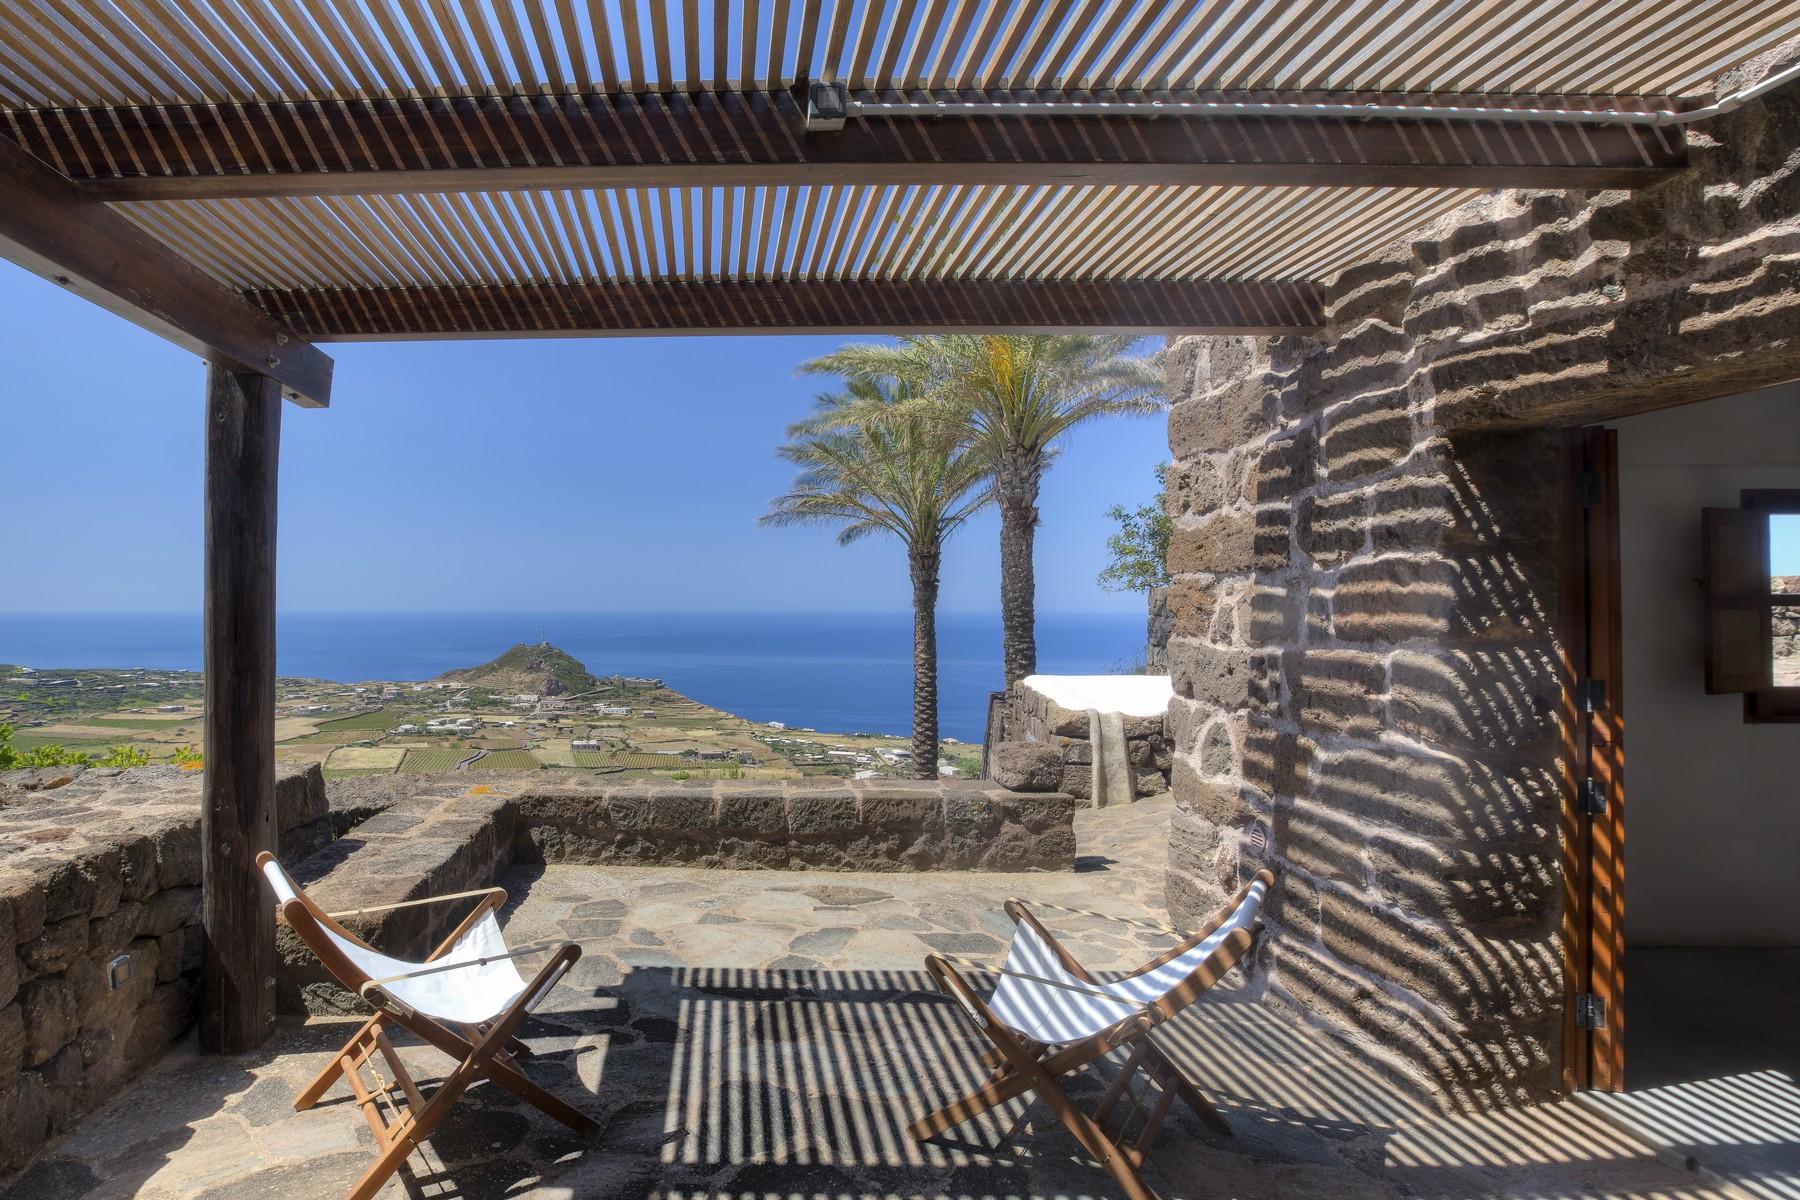 Un paradiso incontaminato nell'esclusiva isola di Pantelleria - 9